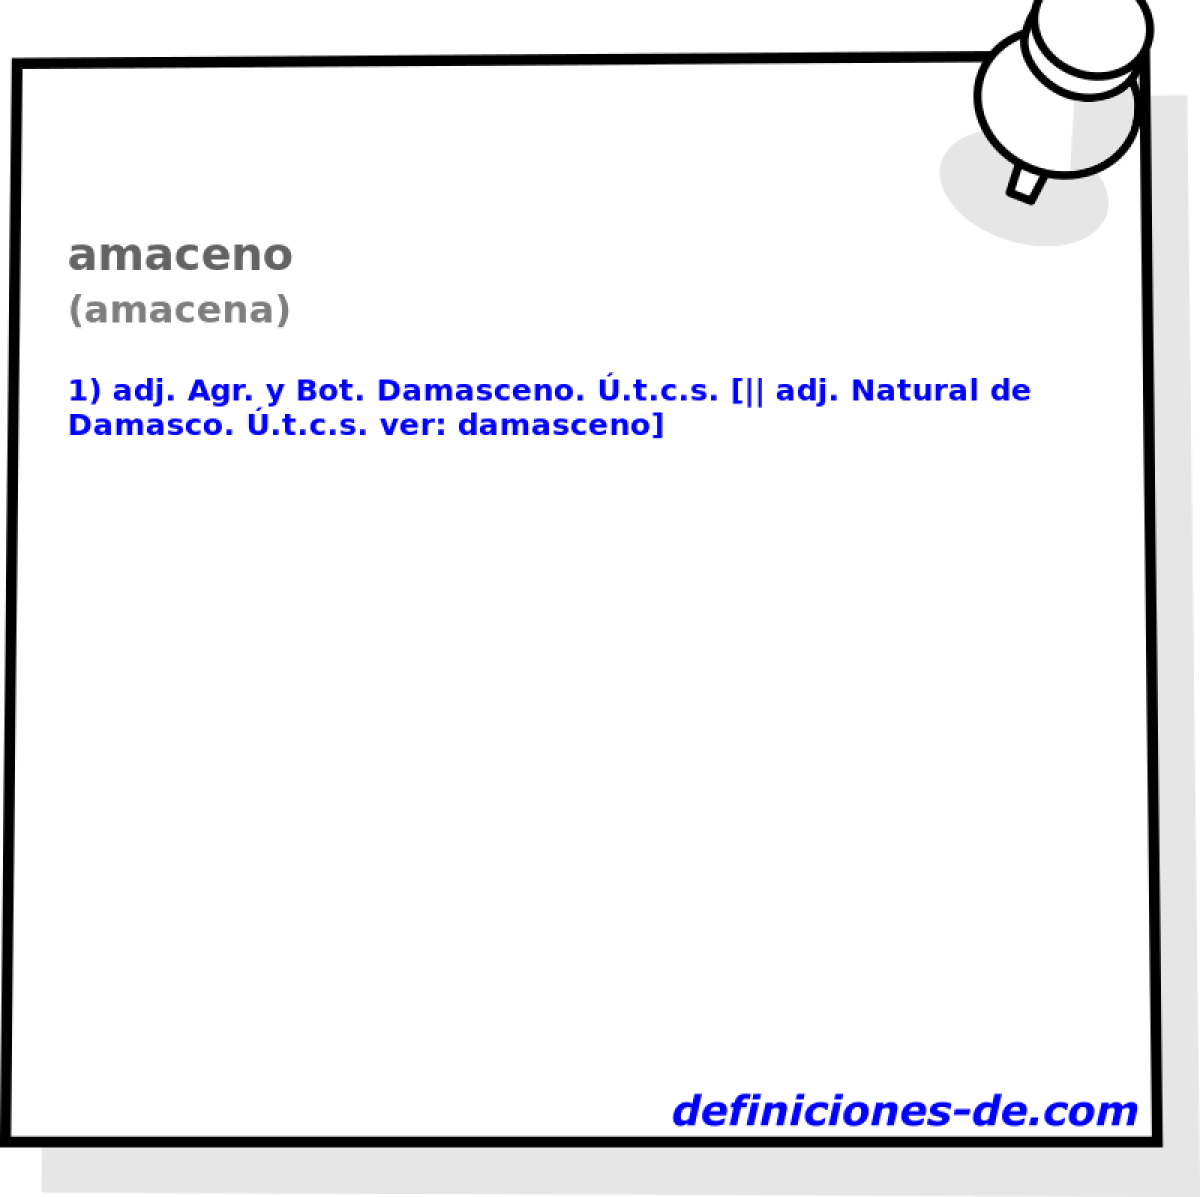 amaceno (amacena)